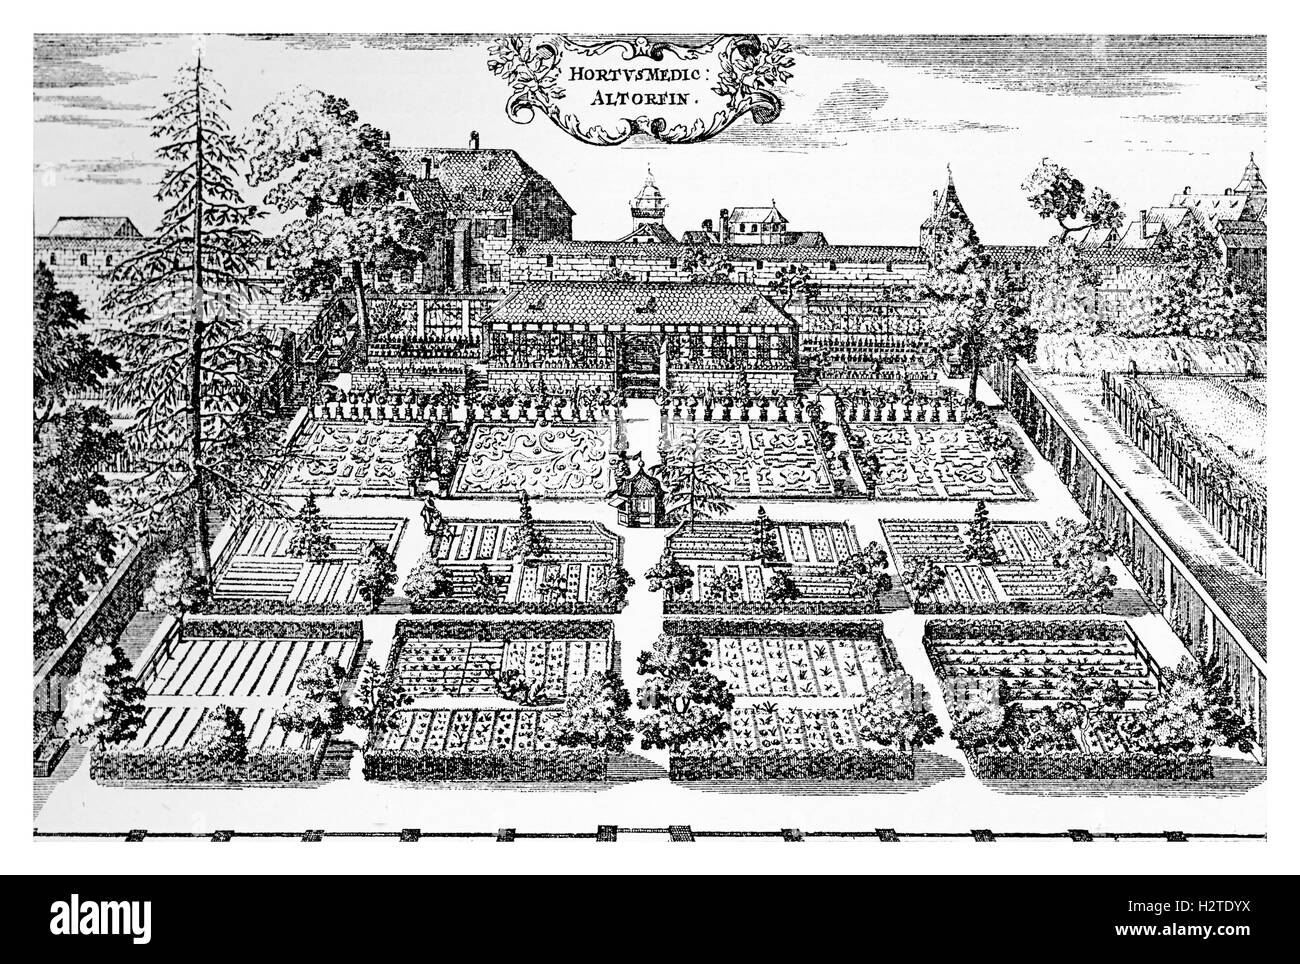 XVII secolo, medico giardino presso la facoltà di medicina dell'Università di Altdorf vicino a Nuremberg, Germania. Altdorf Università è stata fondata nel 1578 Foto Stock